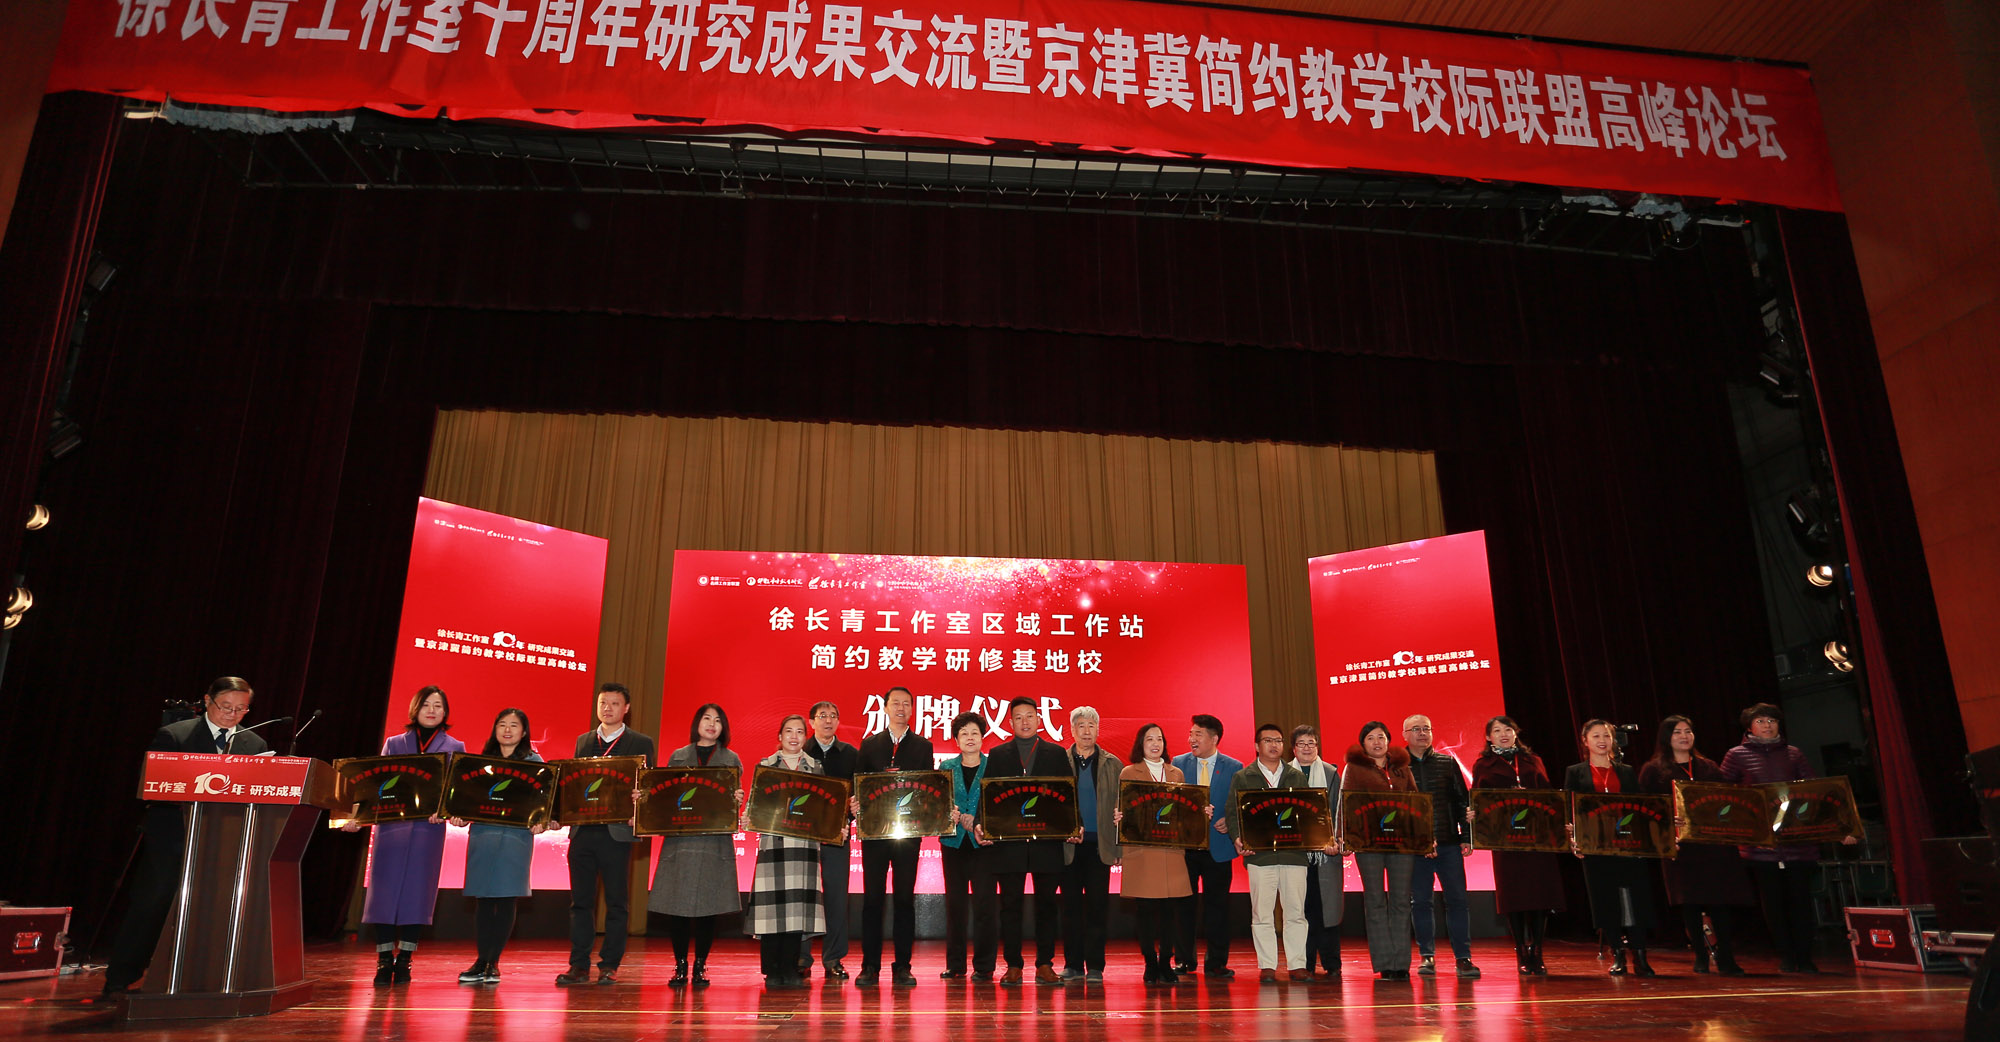 红桥区民进主委，教育局相关领导为徐长青工作室第11批工作站和基地校颁牌。